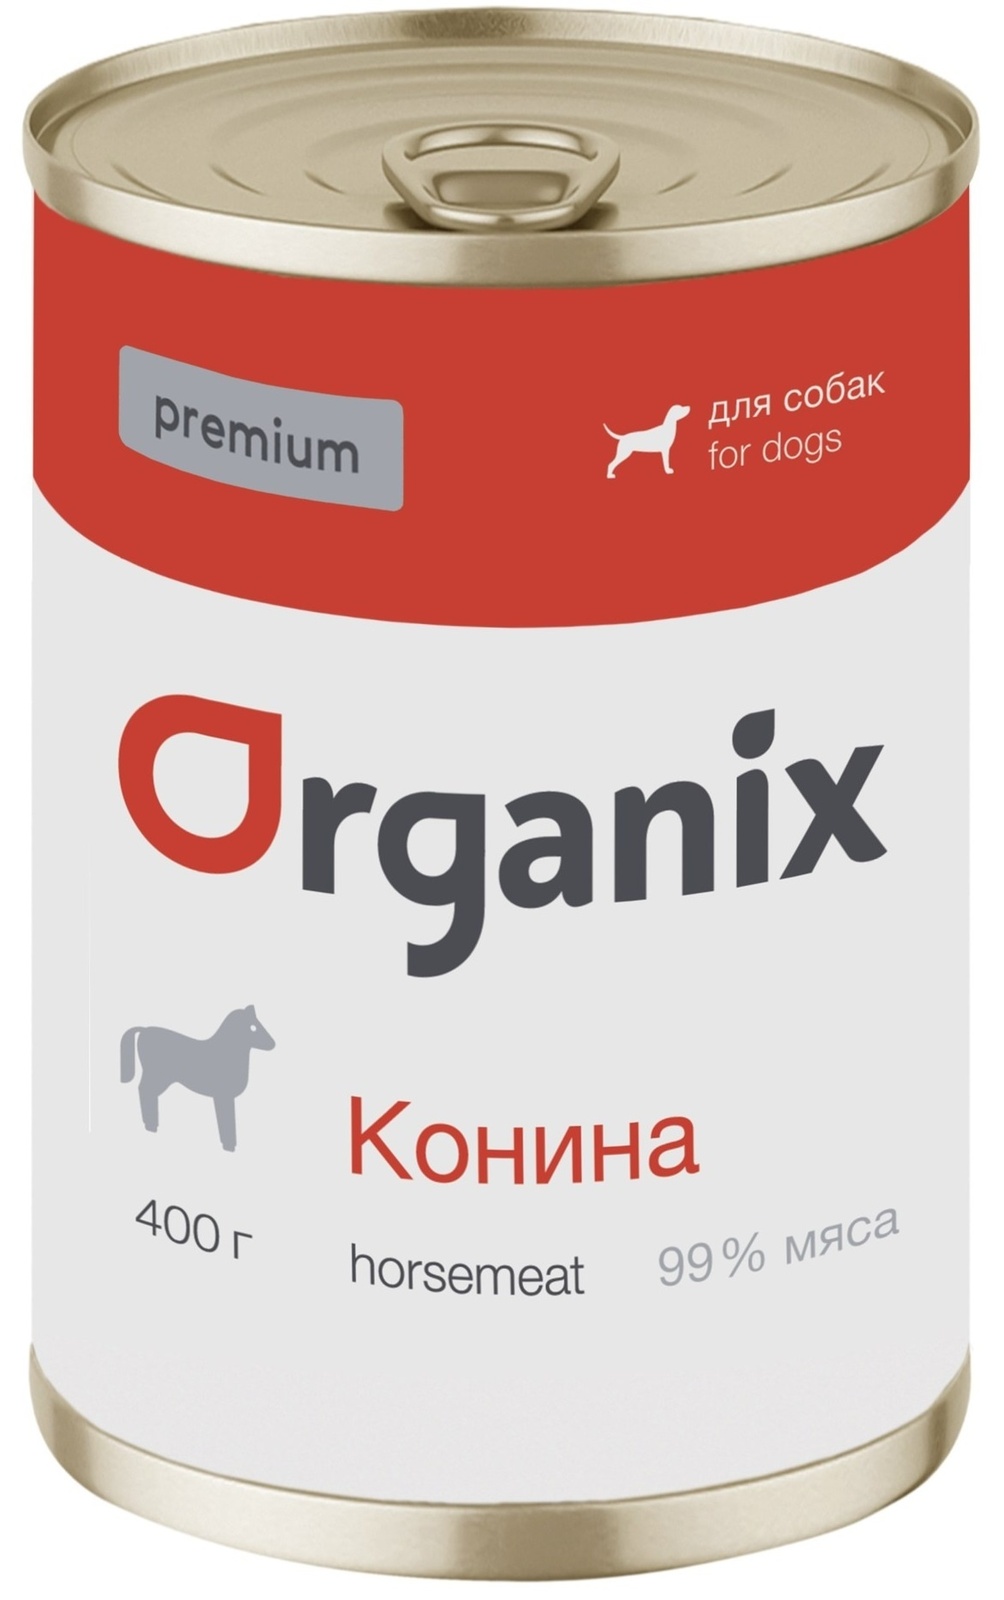 Organix консервы Organix монобелковые премиум консервы для собак, с кониной (100 г) organix консервы organix консервы для собак индейка с сердечками и шпинатом 100 г